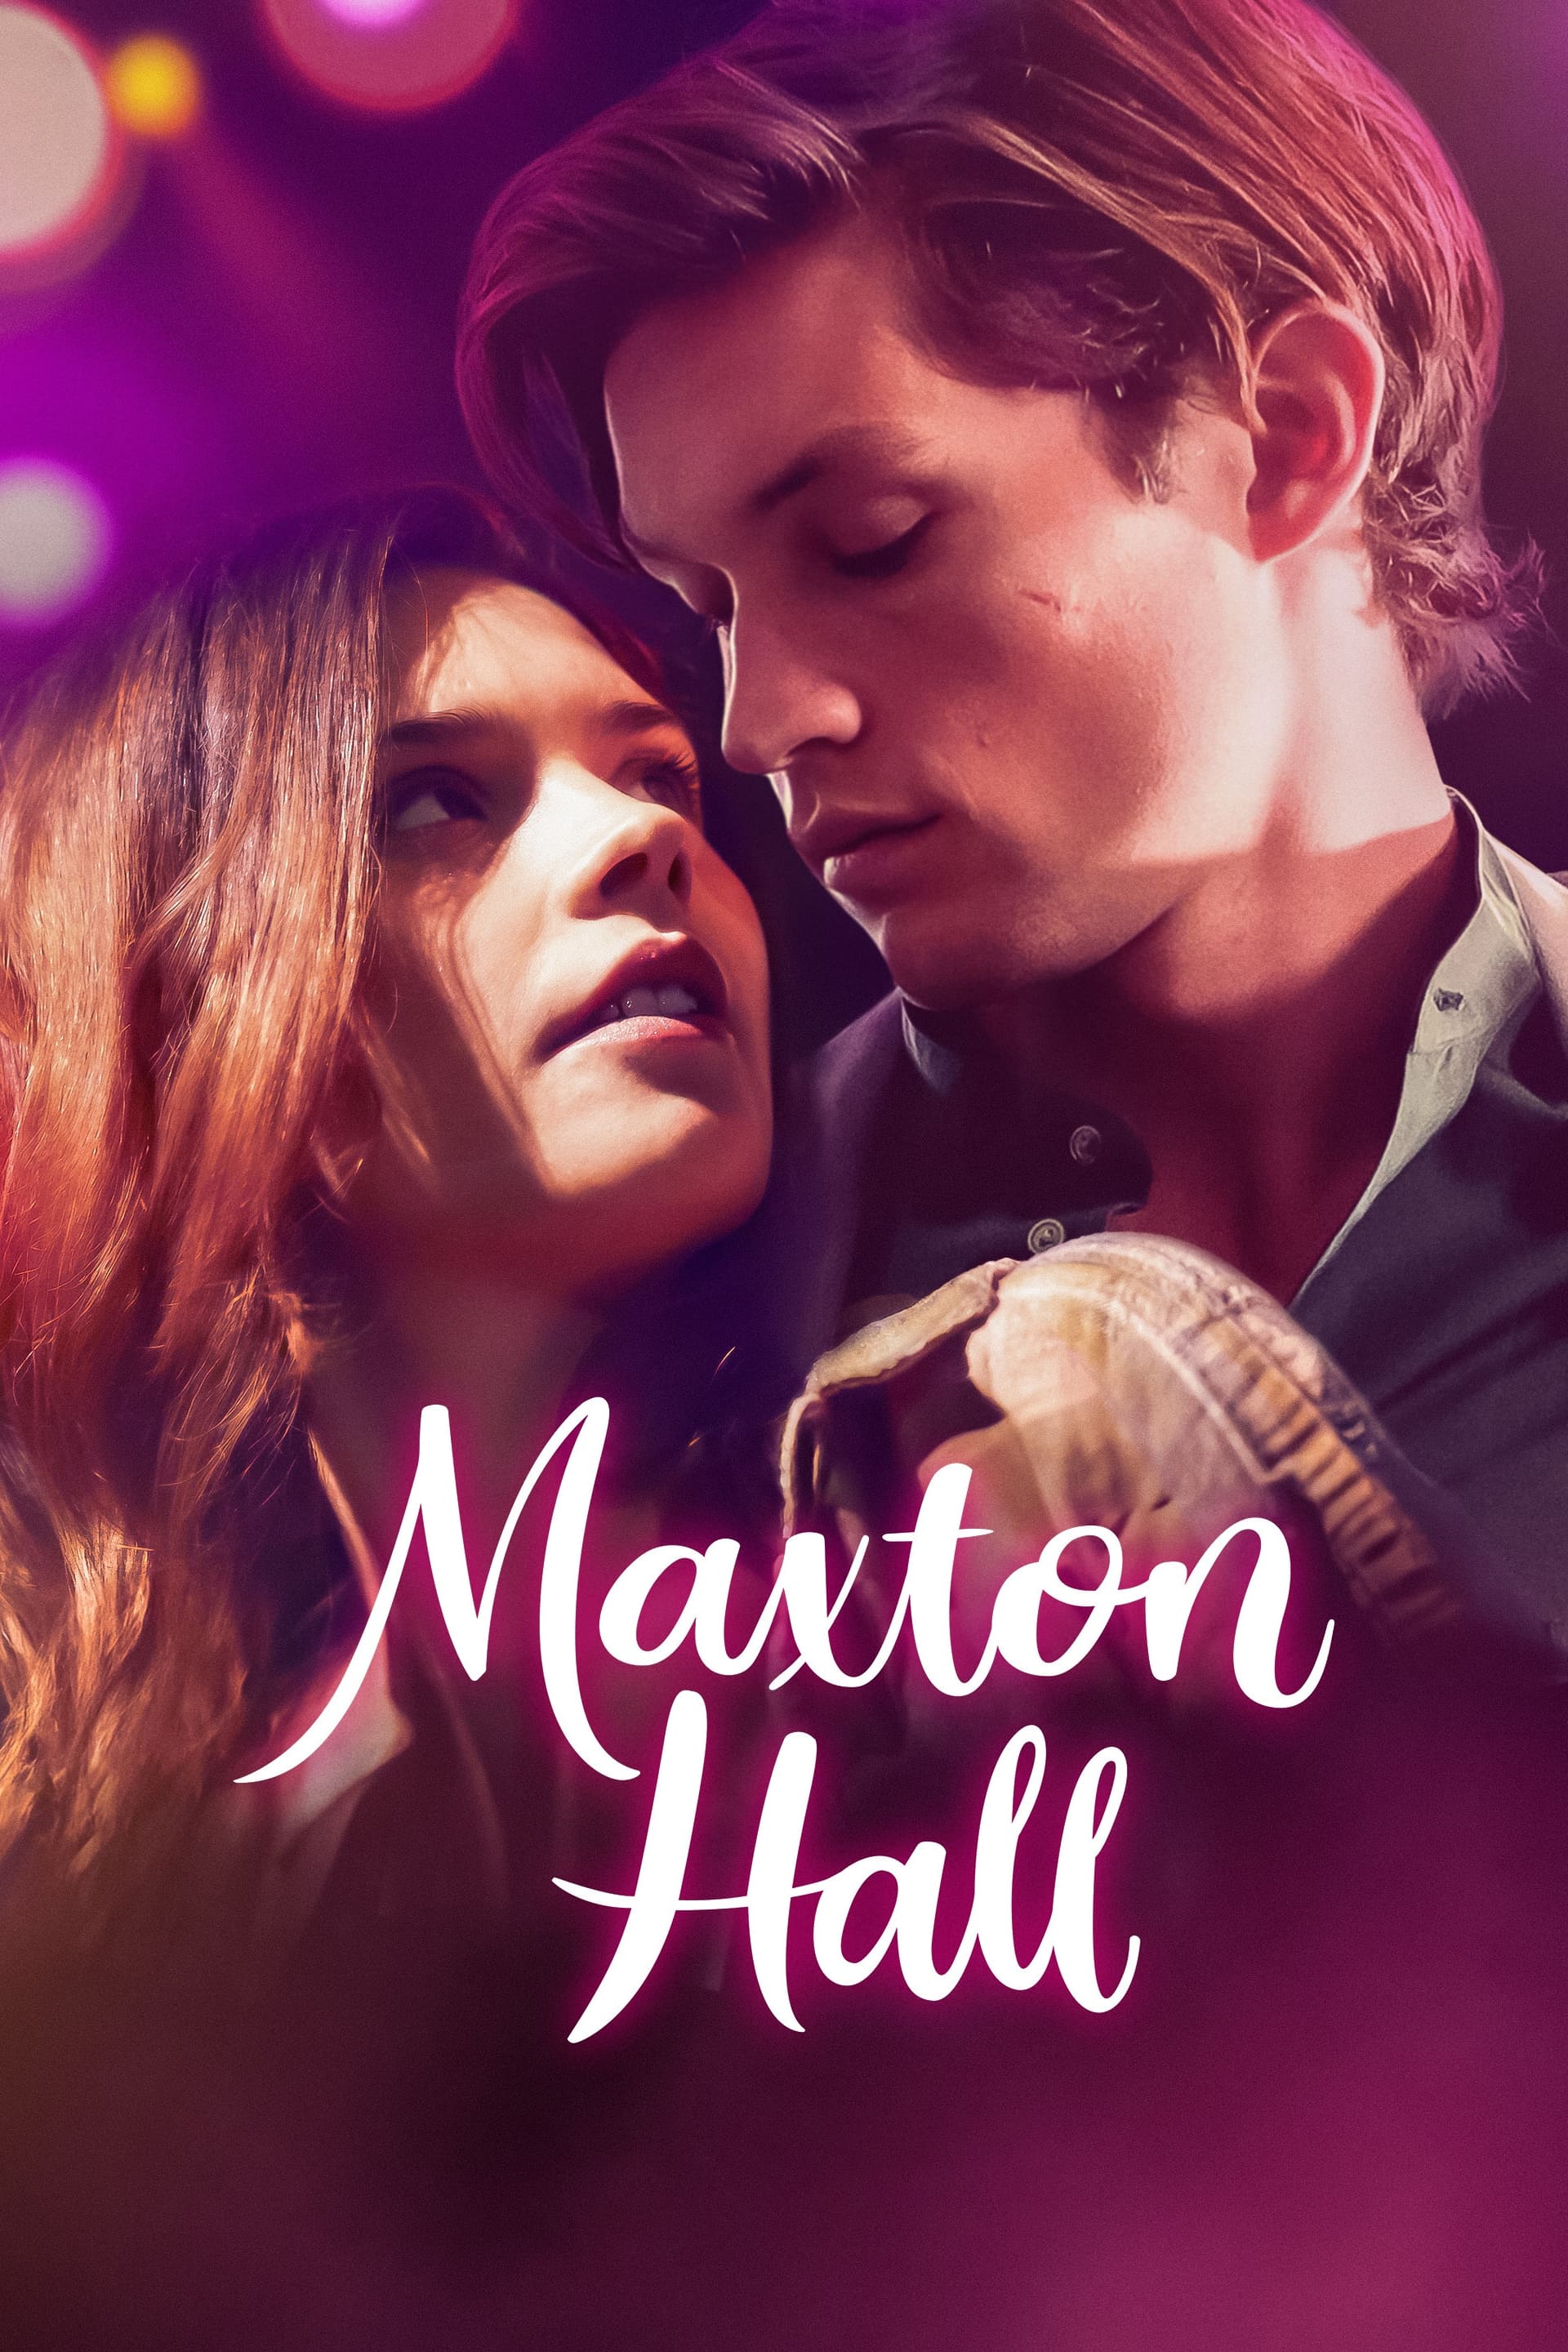 Maxton Hall – The World Between Us